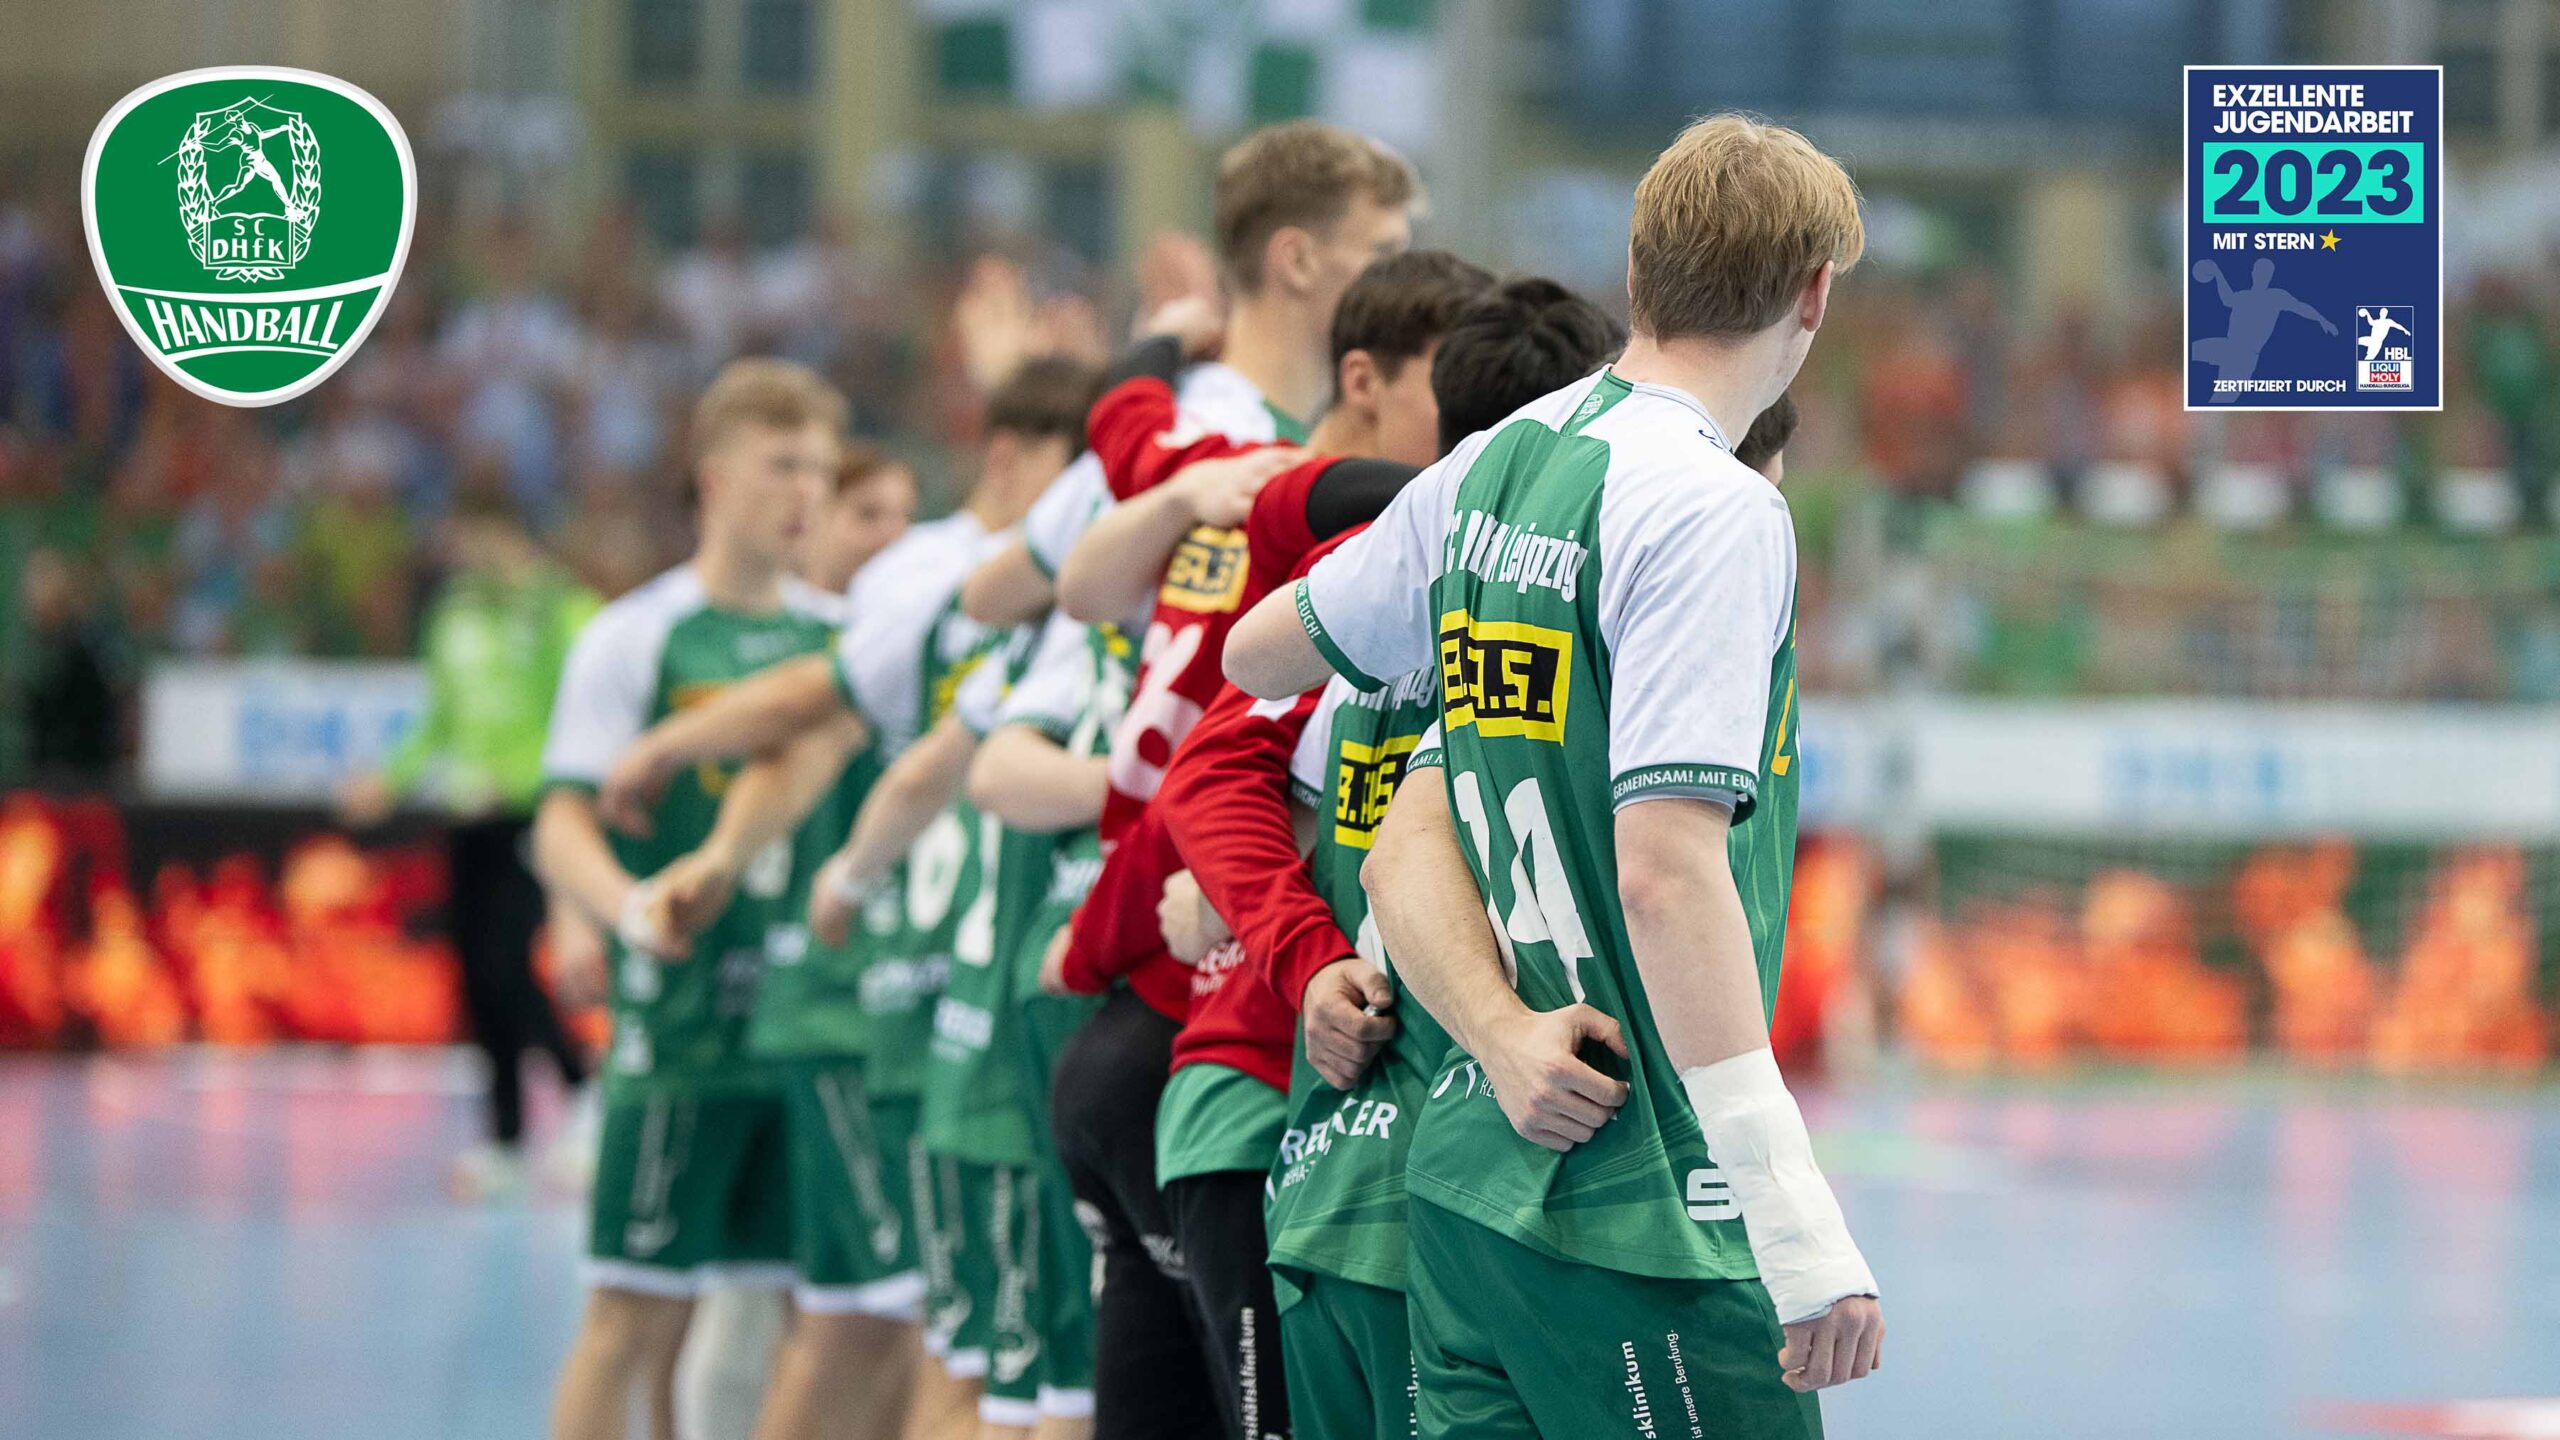 SC DHfK Handball erneut für Nachwuchsarbeit ausgezeichnet